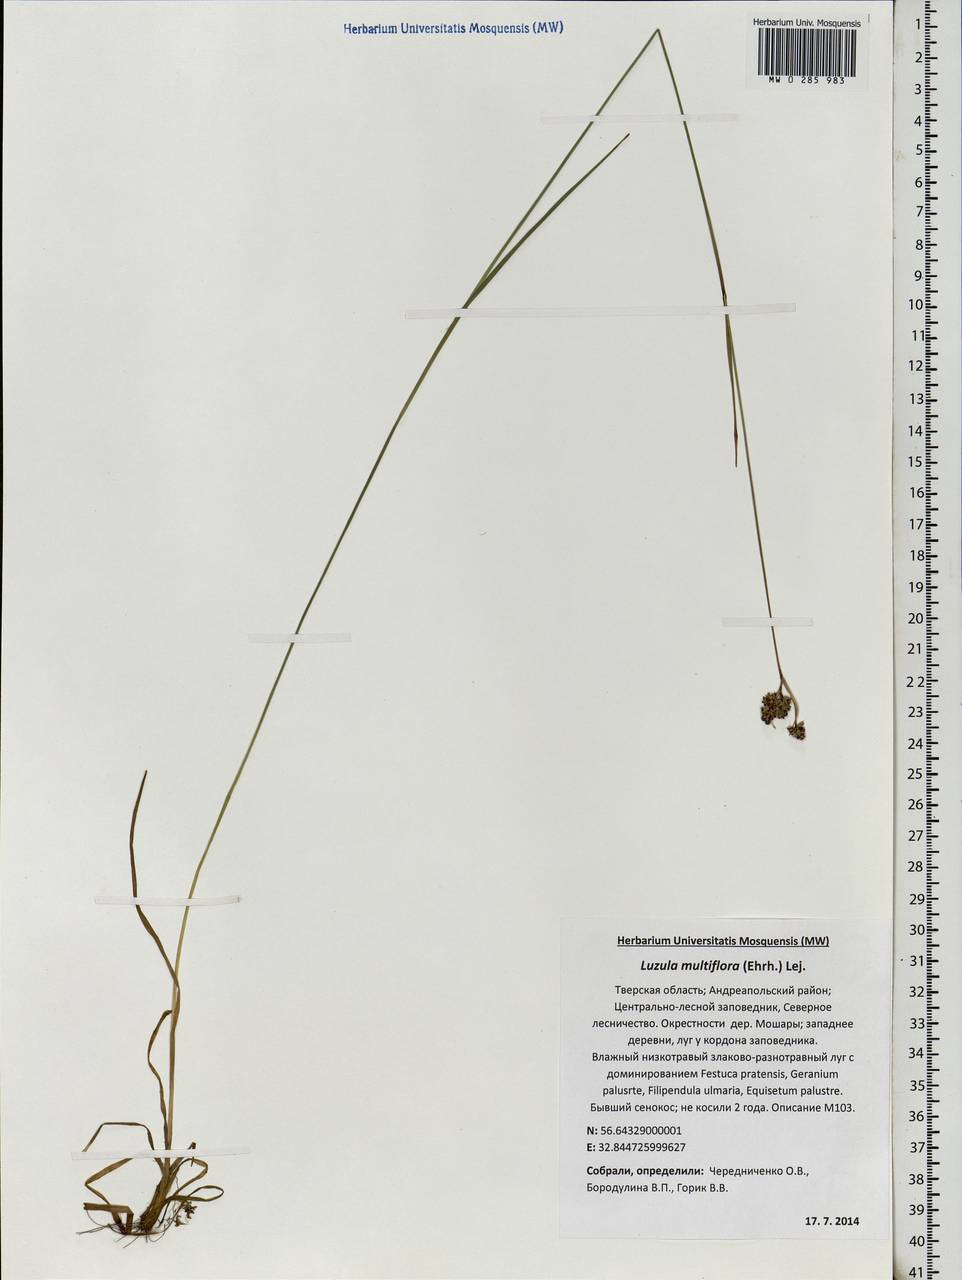 Luzula multiflora (Ehrh.) Lej., Eastern Europe, North-Western region (E2) (Russia)